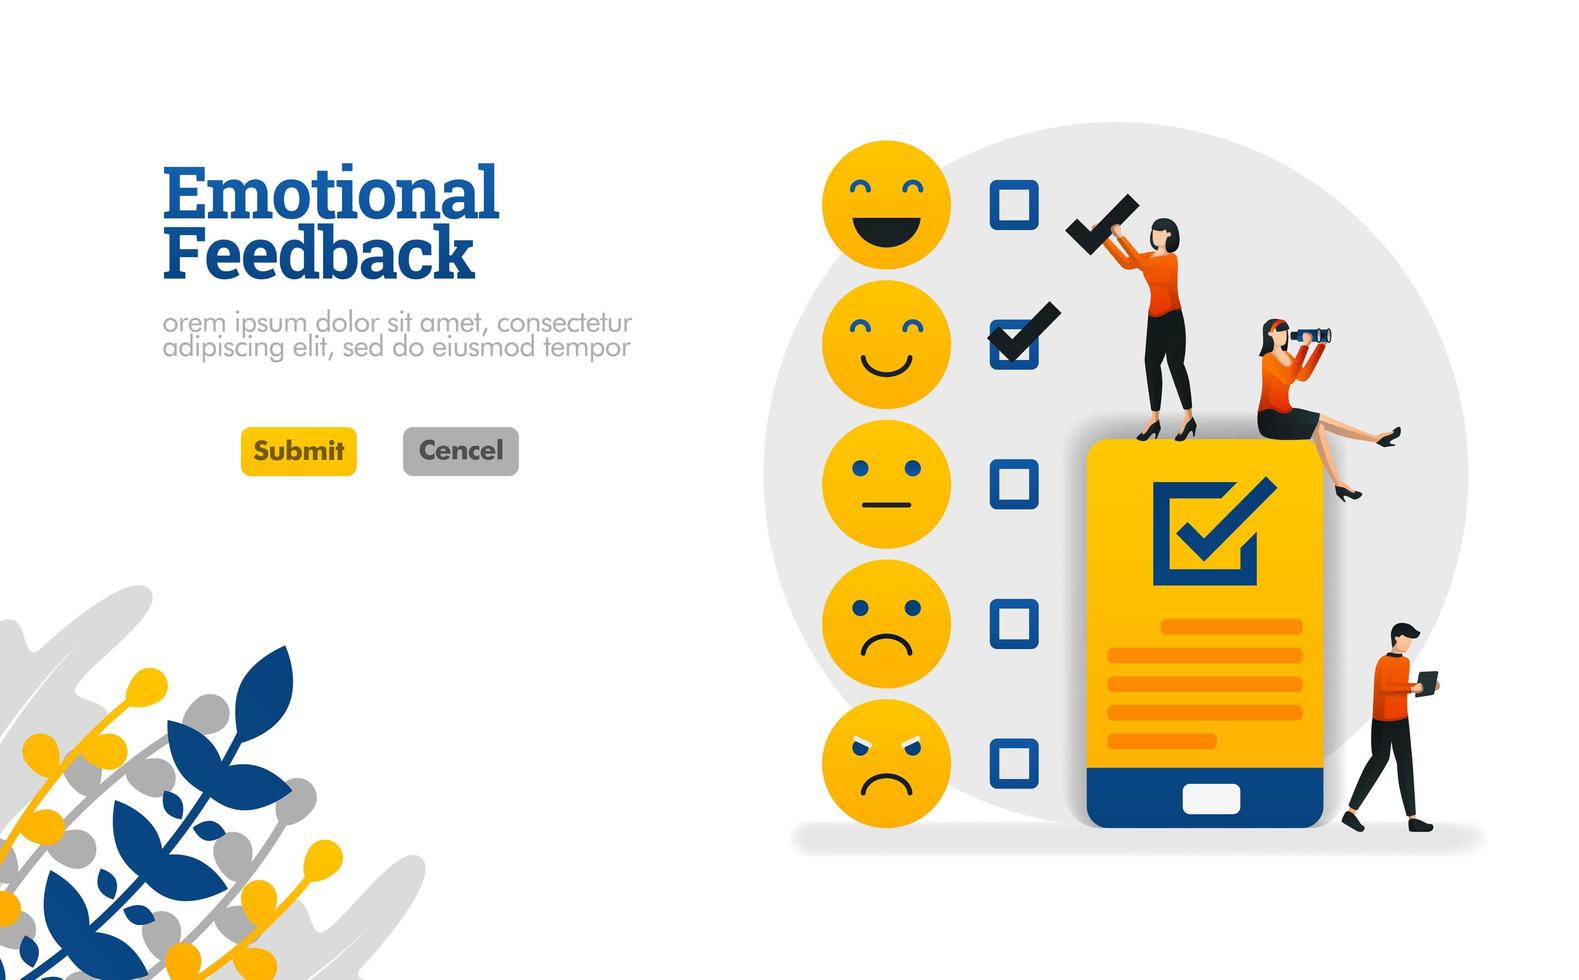 Emotionales Feedback mit Emoticons und Checklisten auf Smartphones Vektor-Illustration Konzept kann verwendet werden, Landing Page, Vorlage, UIux, Web, mobile App, Poster, Banner, Website vektor